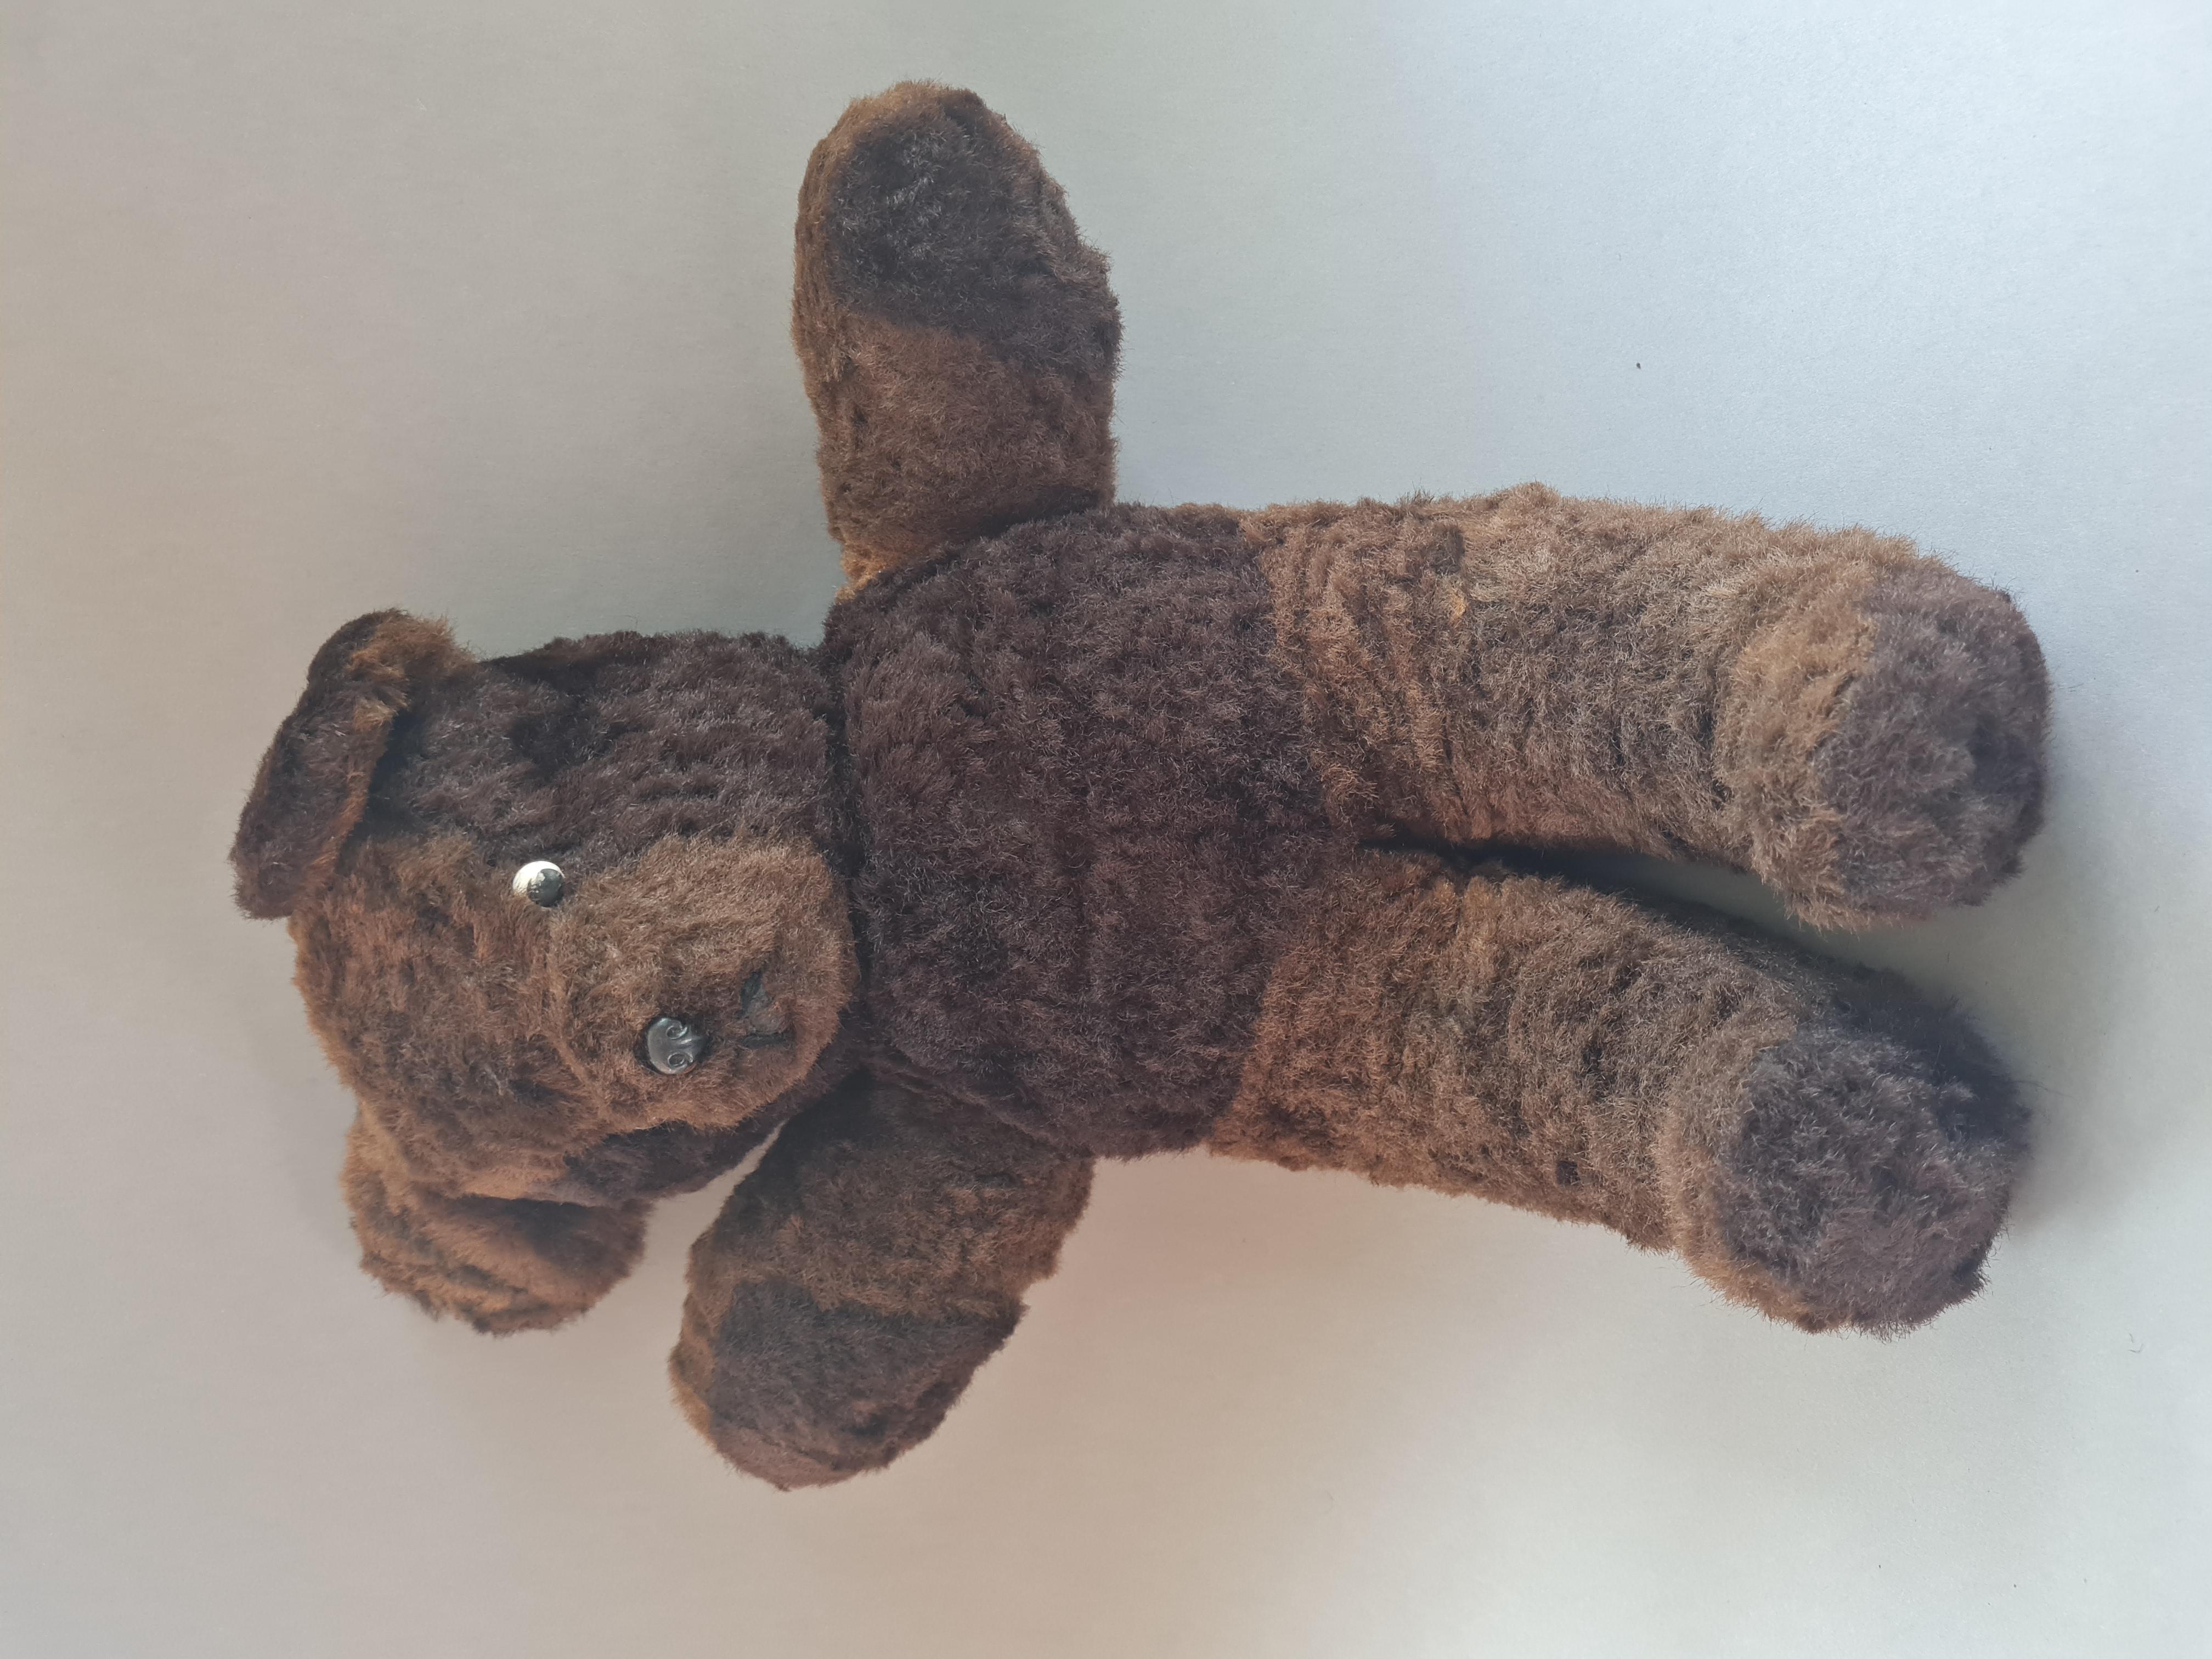 Vintage Teddybär mit viel Kuschelerlebnis.
Mohair.
Deutschland 60'ies